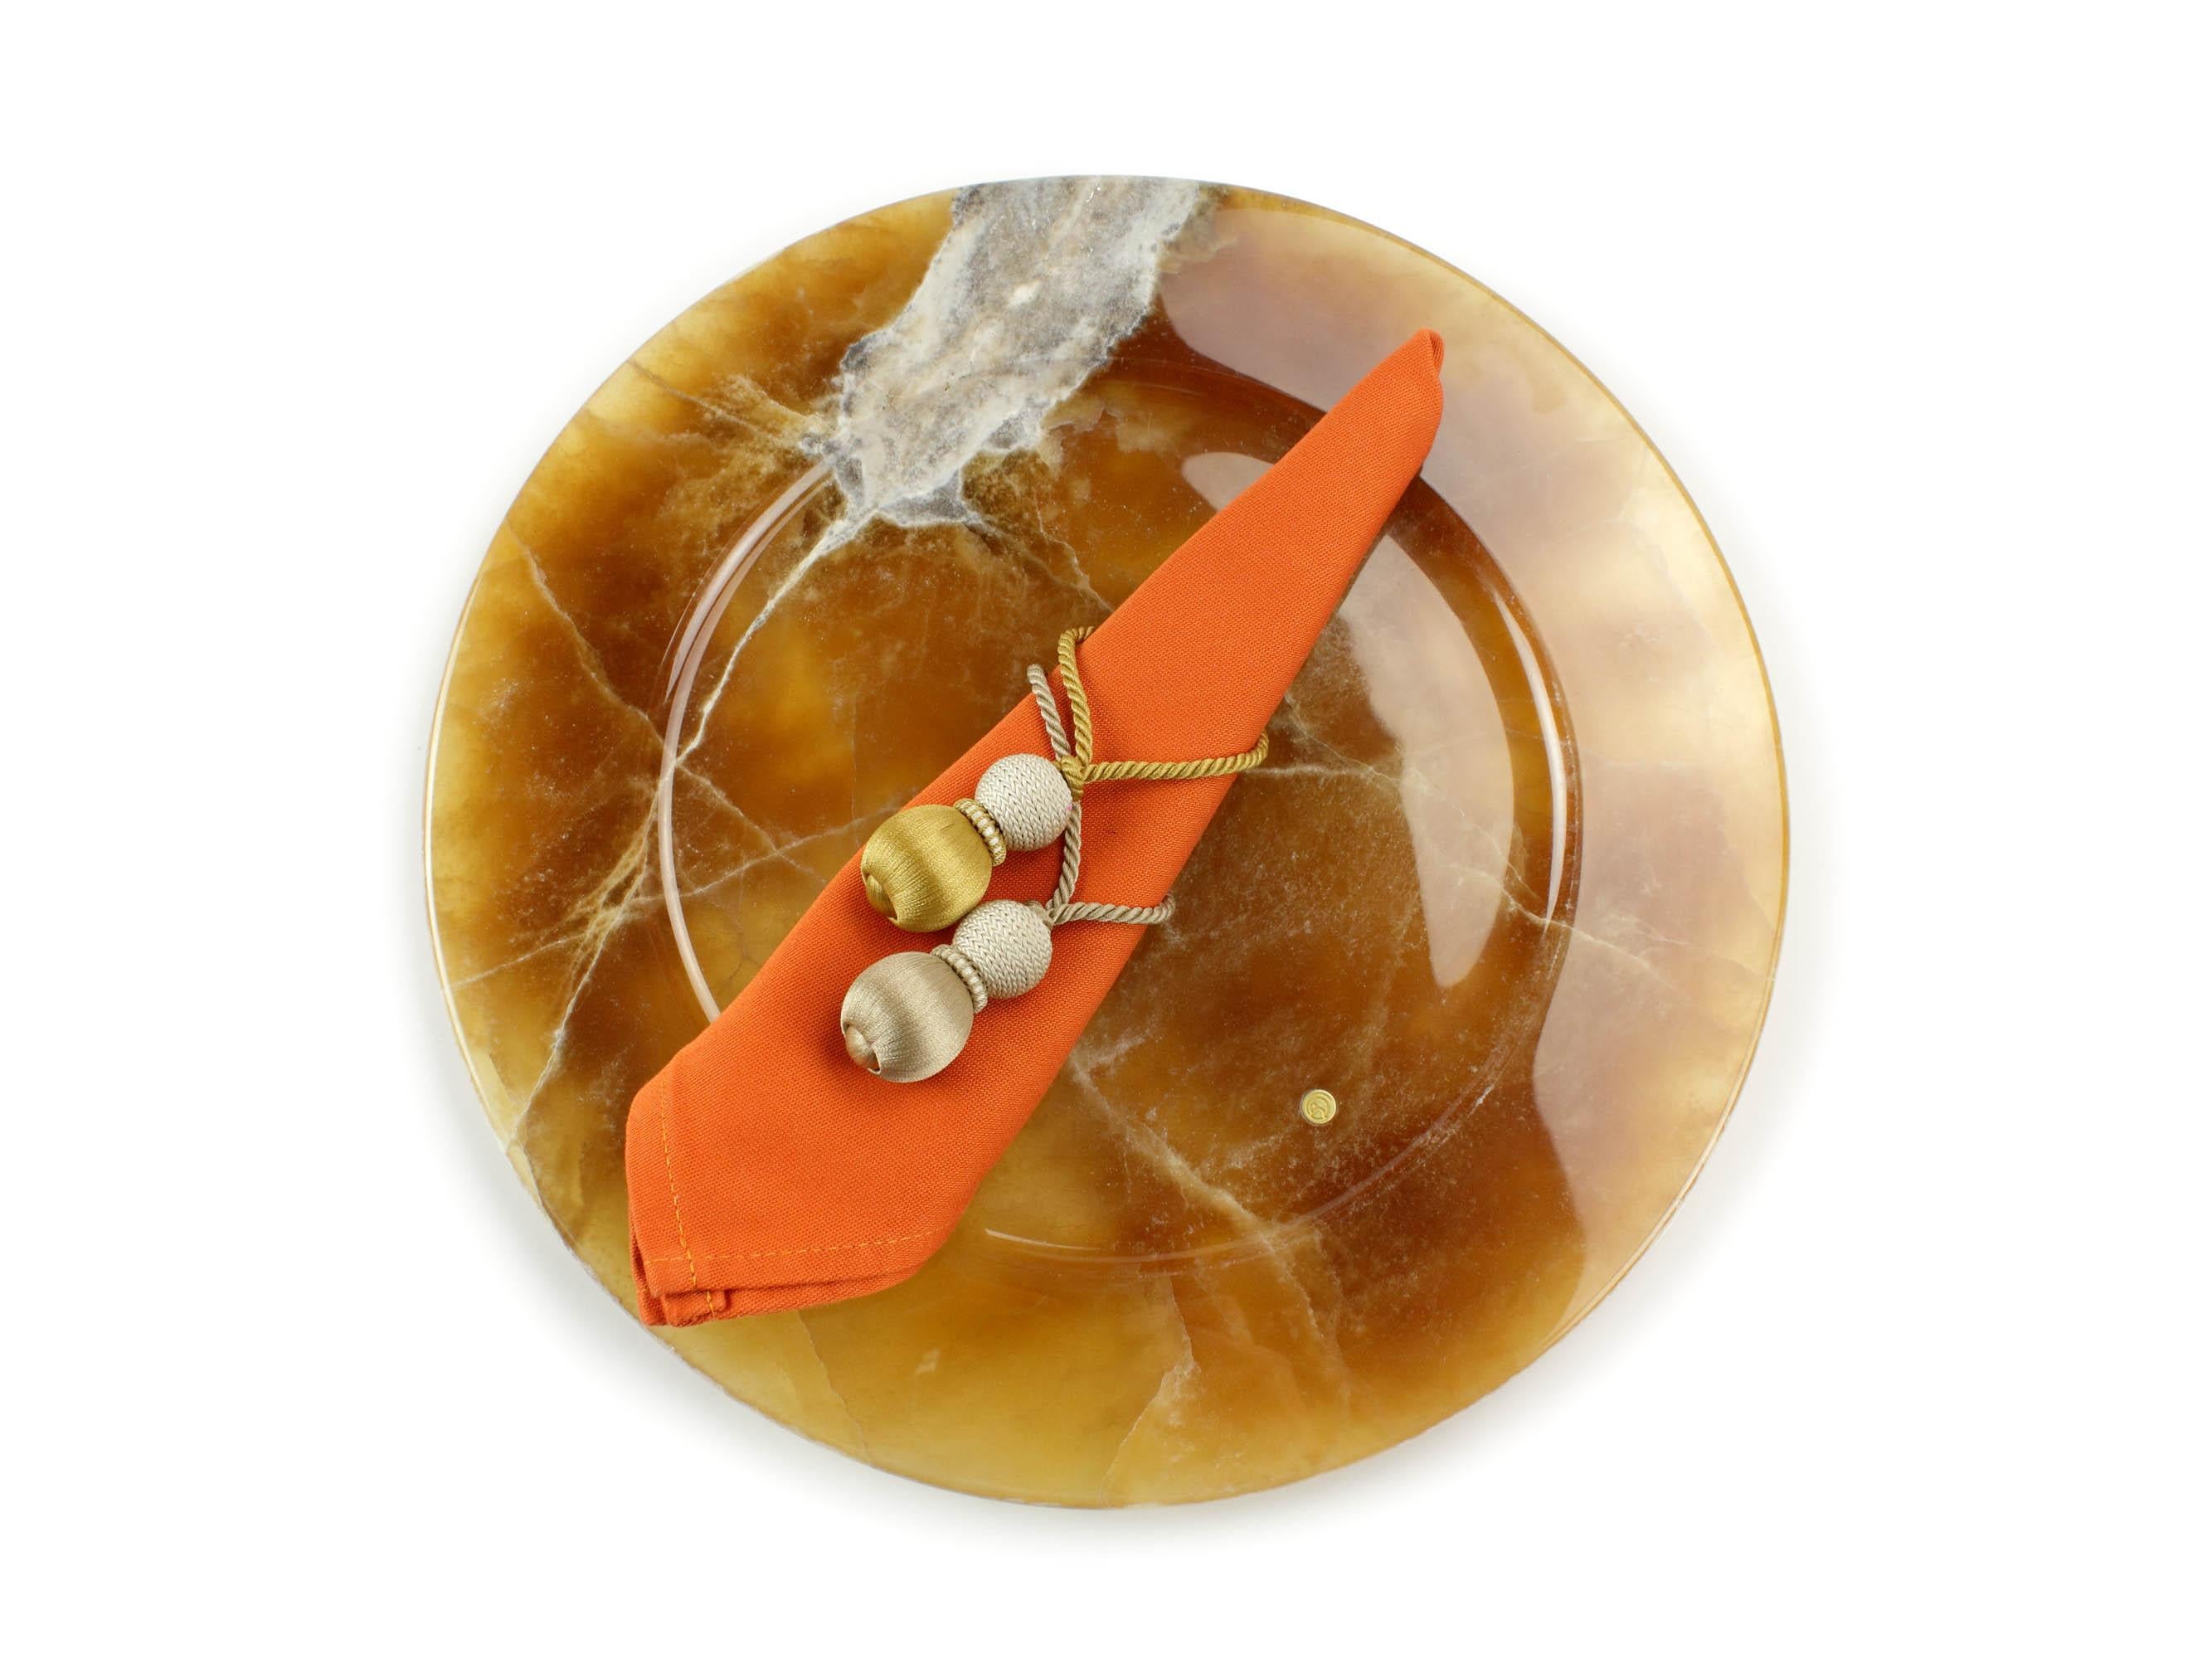 Lot de 4 assiettes de présentation en onyx d'ambre sculpté à la main. Utilisation multiple en tant qu'assiettes de présentation, assiettes, plateaux et plateaux de service. La finition polie souligne la transparence de l'onyx, ce qui en fait un